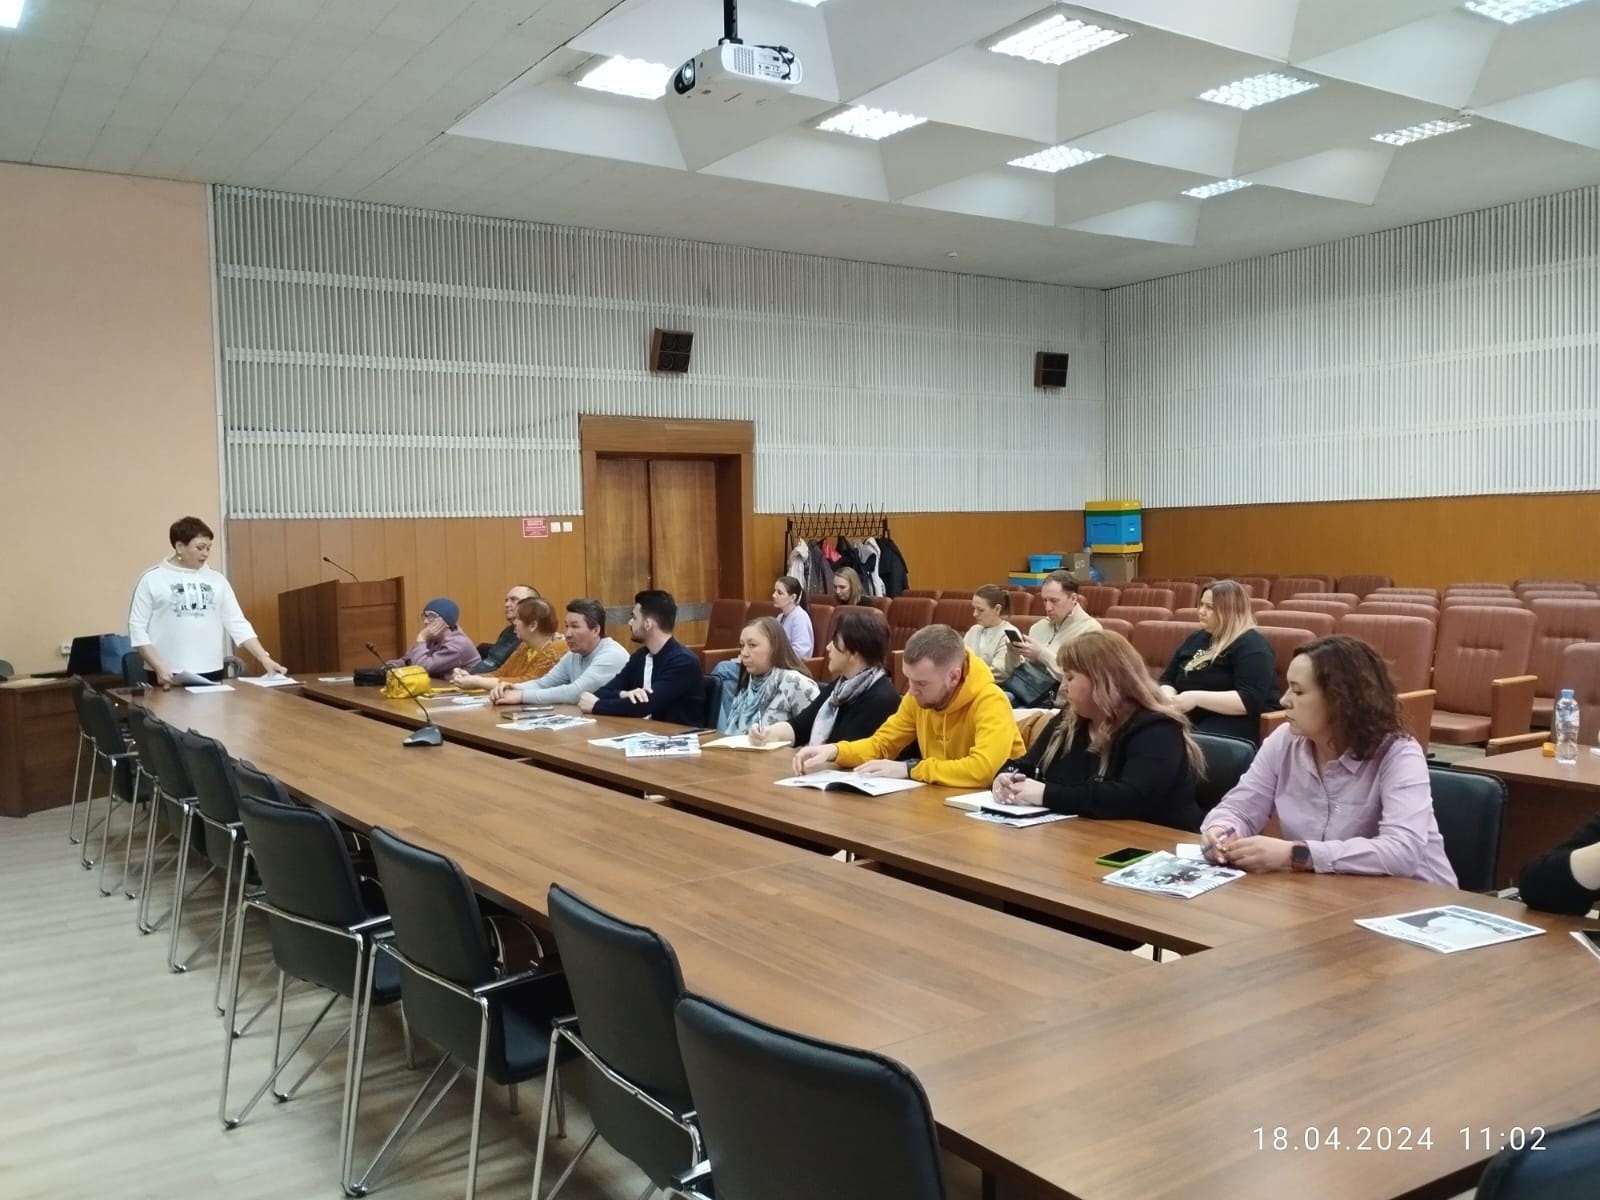 В администрации района состоялось мероприятие с участием представителей бизнес-сообщества города Череповца, Череповецкого муниципалитета и Торгово-промышленной палаты.